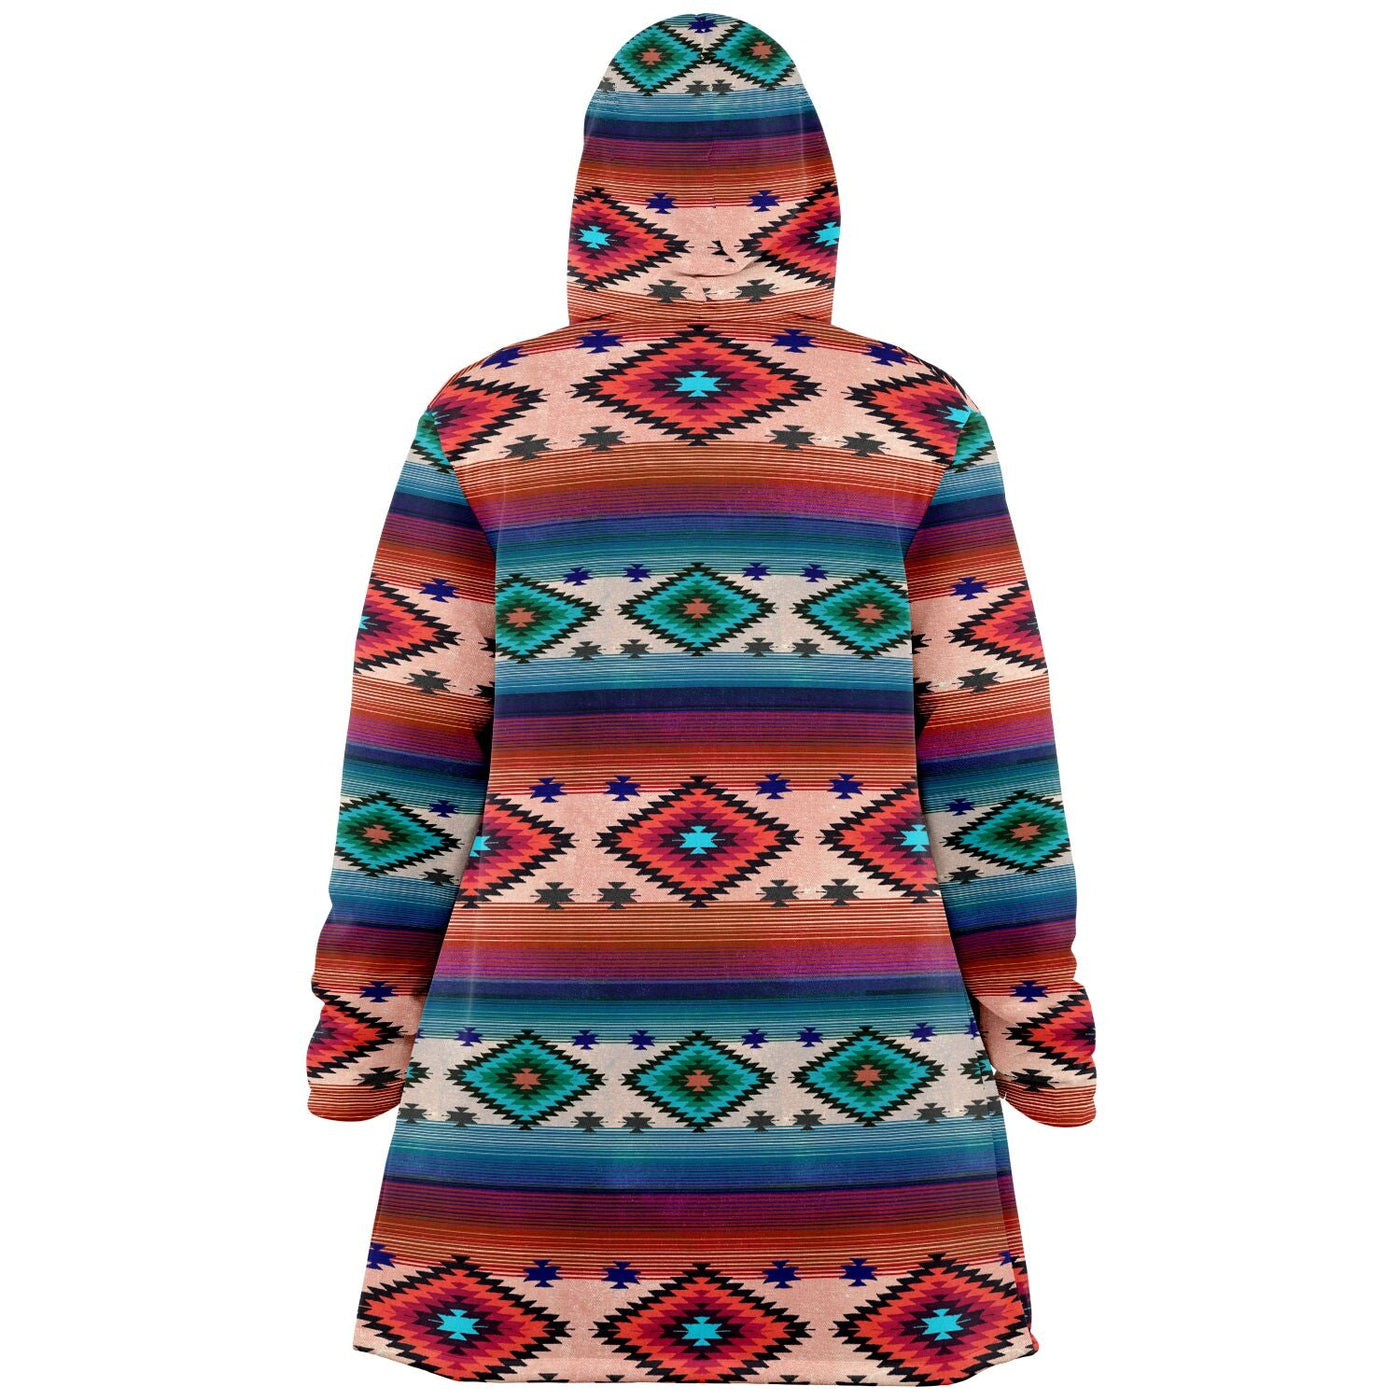 Funky Shaman Blue Beige | Native American Hooded Cloak